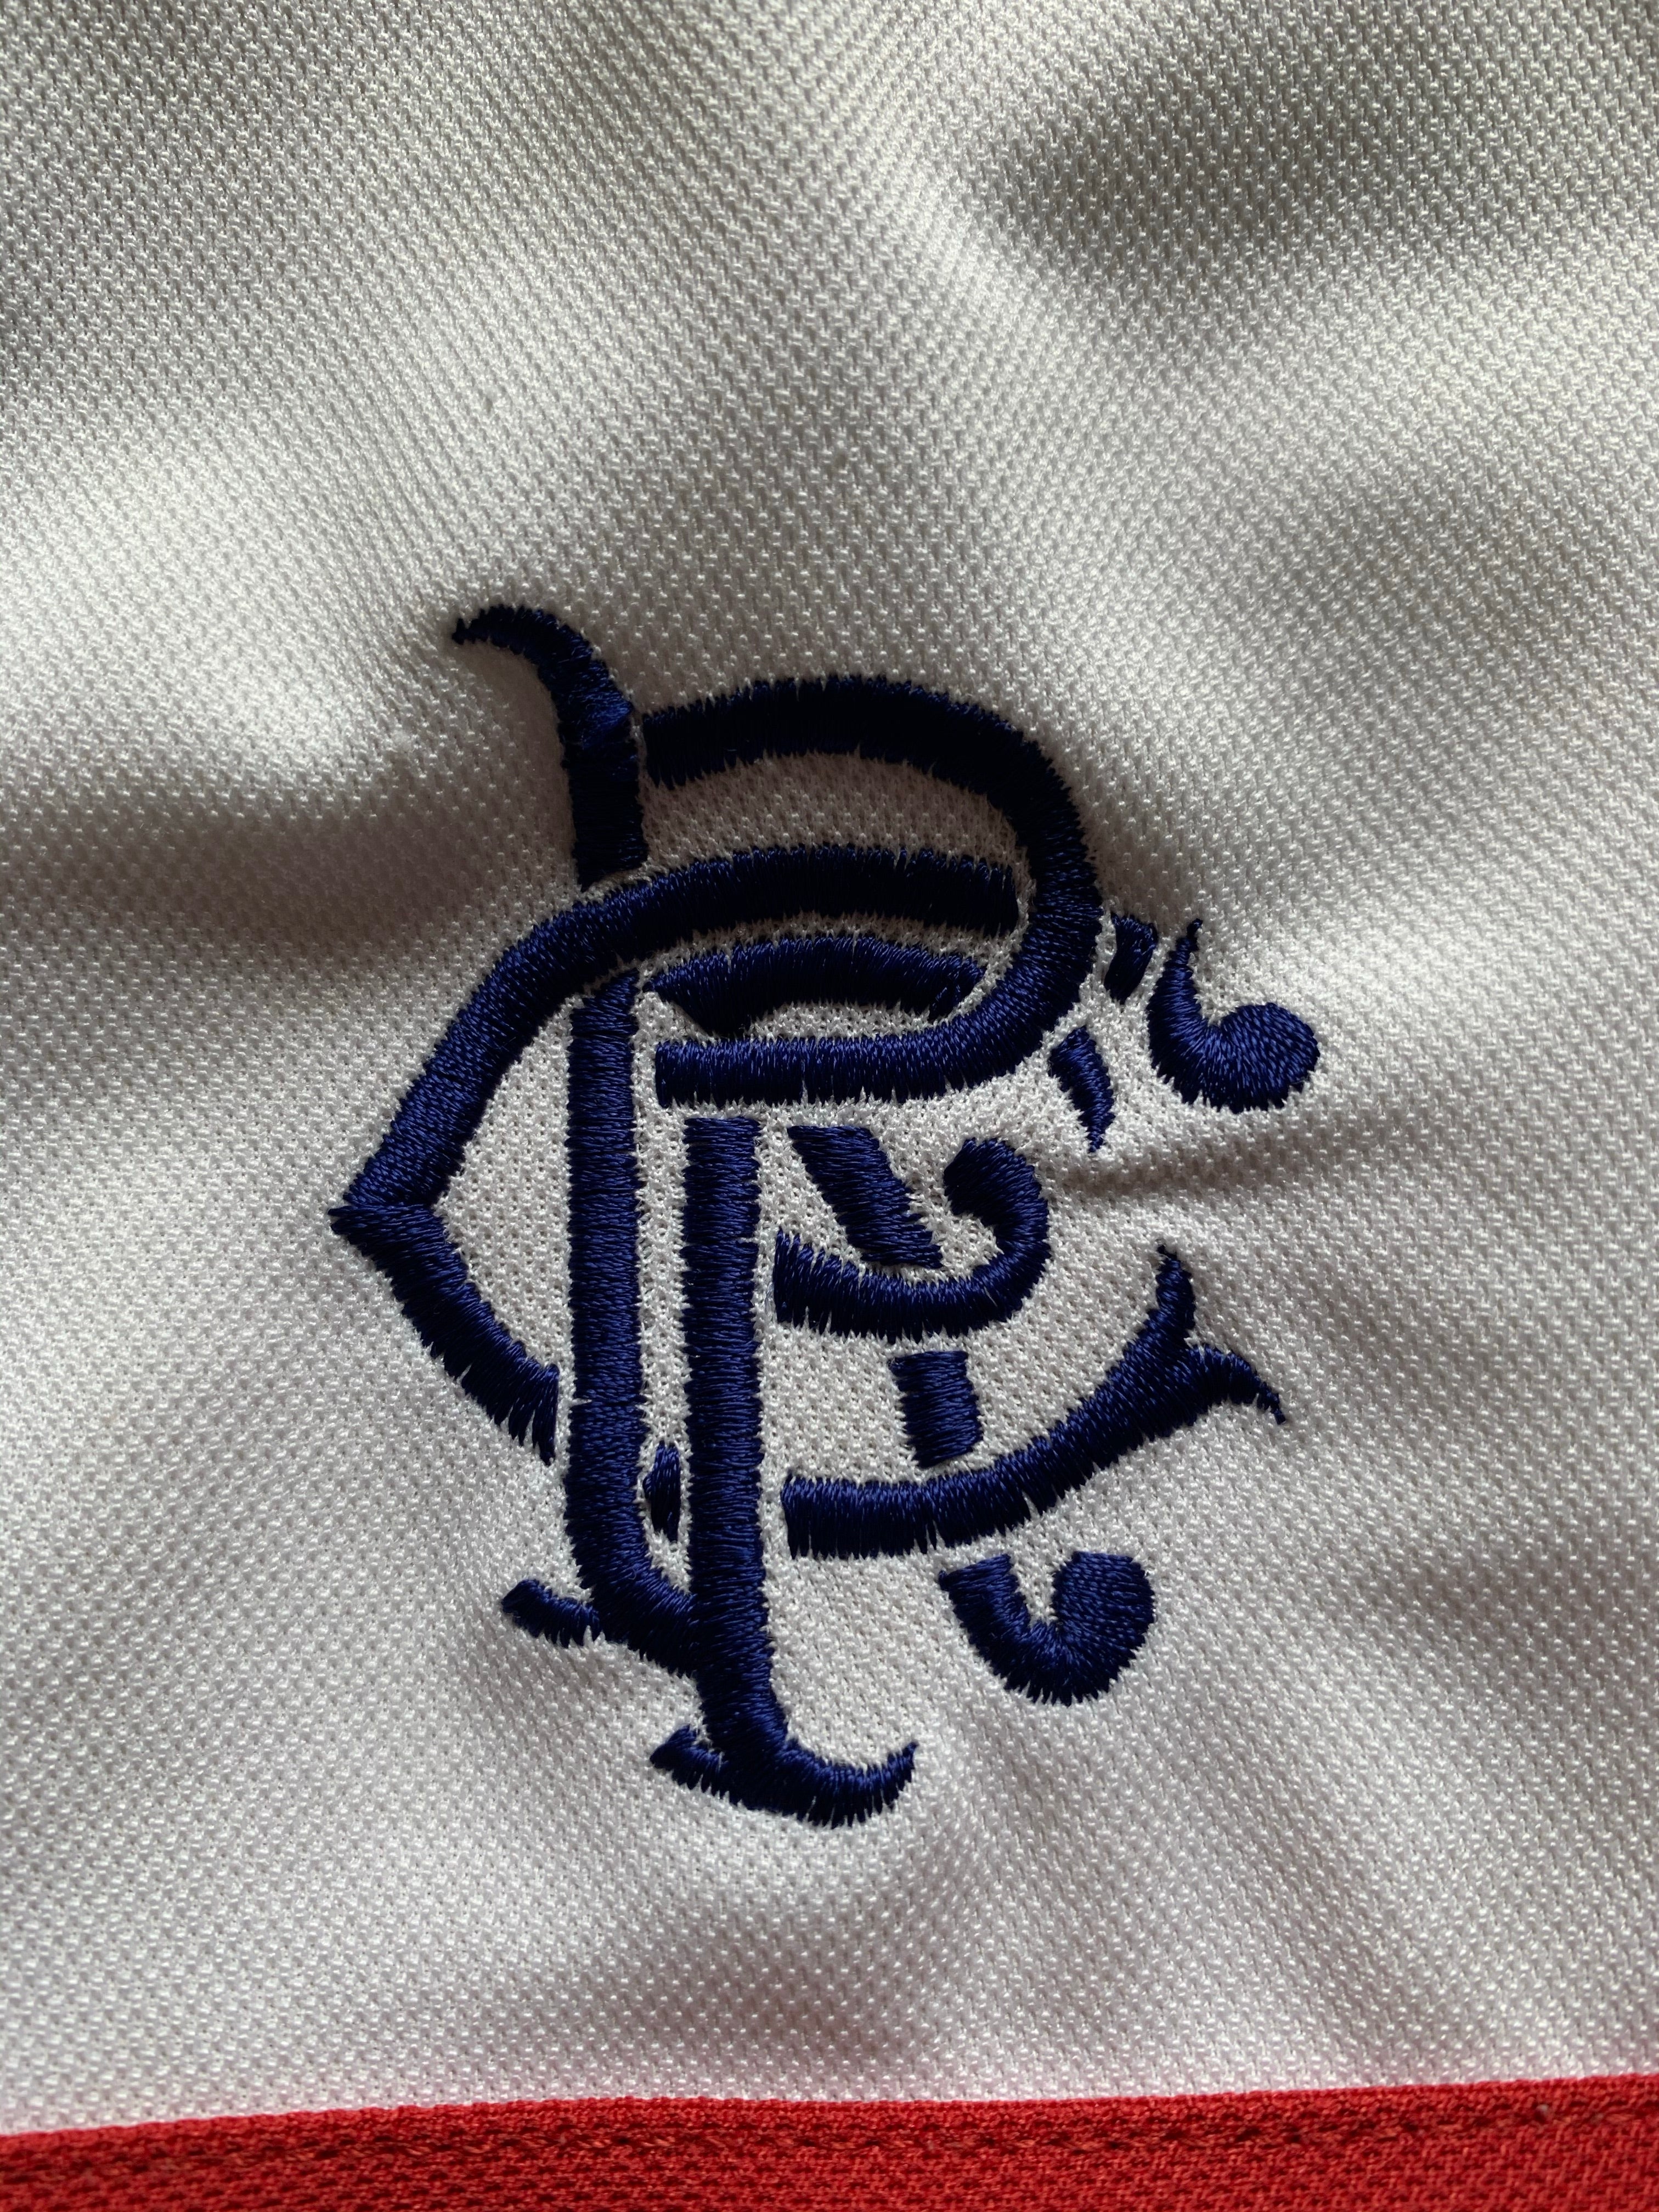 Camiseta de visitante de los Rangers 2000/01 (XL) 8/10